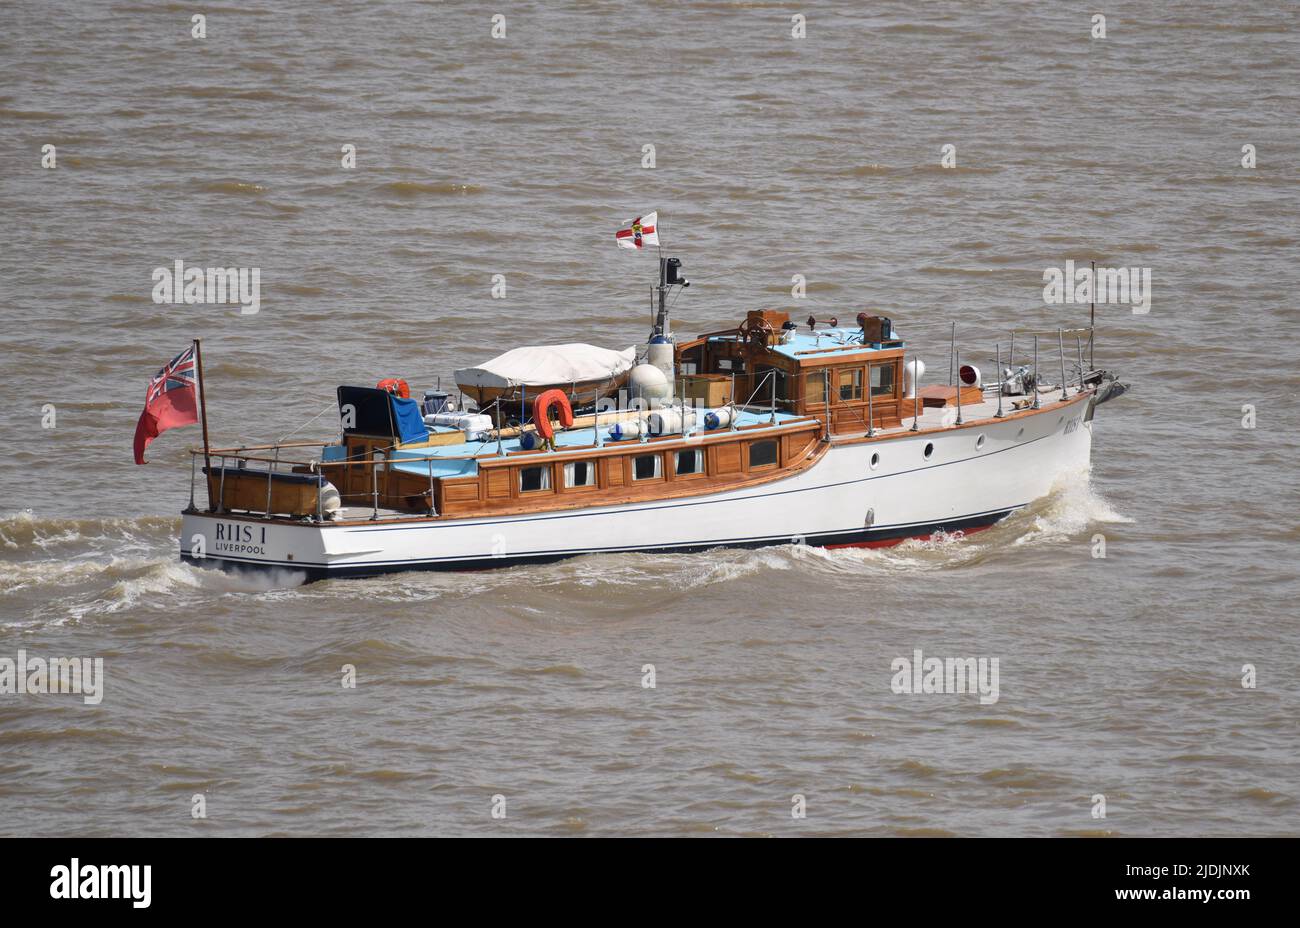 21/06/2022 Gravesend UK Dunkirk Little Ship Riis 1 passage de Gravesend. Le yacht à moteur construit en 1920 sous le nom de White Heather. Elle était l'une des flottille de s. Banque D'Images